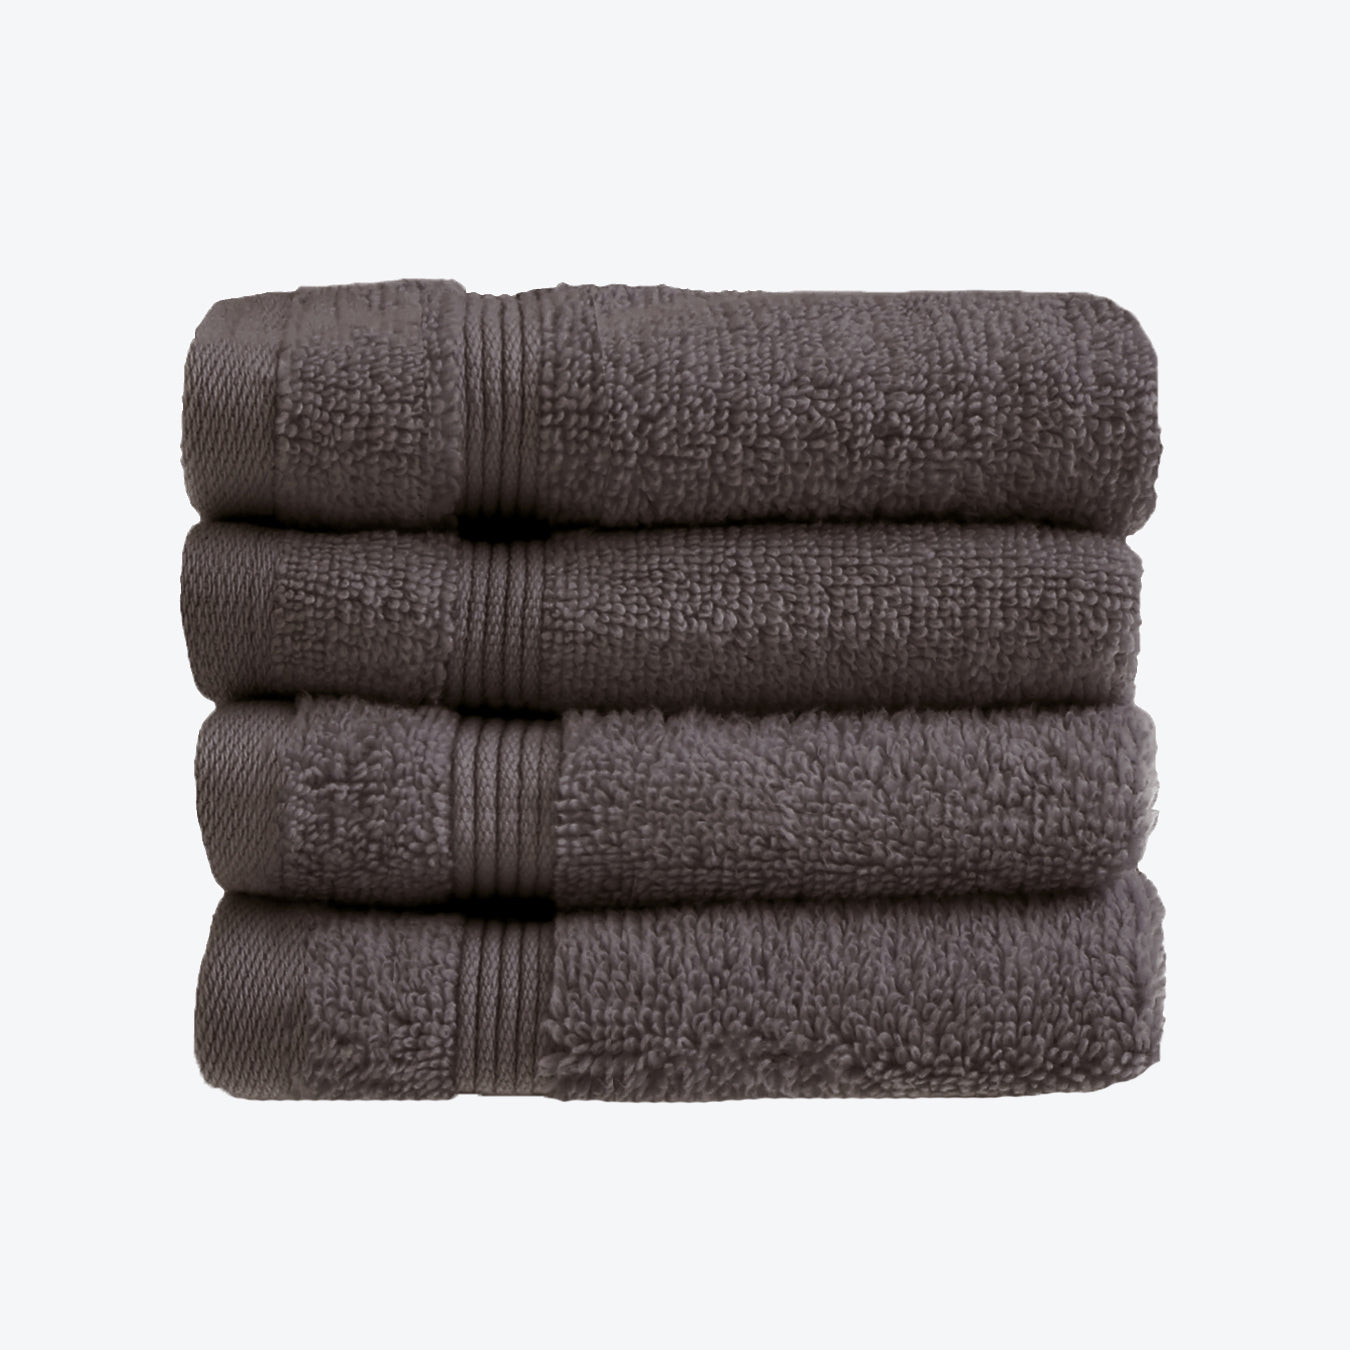 Charcoal Grey Egyptian Towels 4pk Face Cloths Set- Premium Zero Twist Cotton Flannels